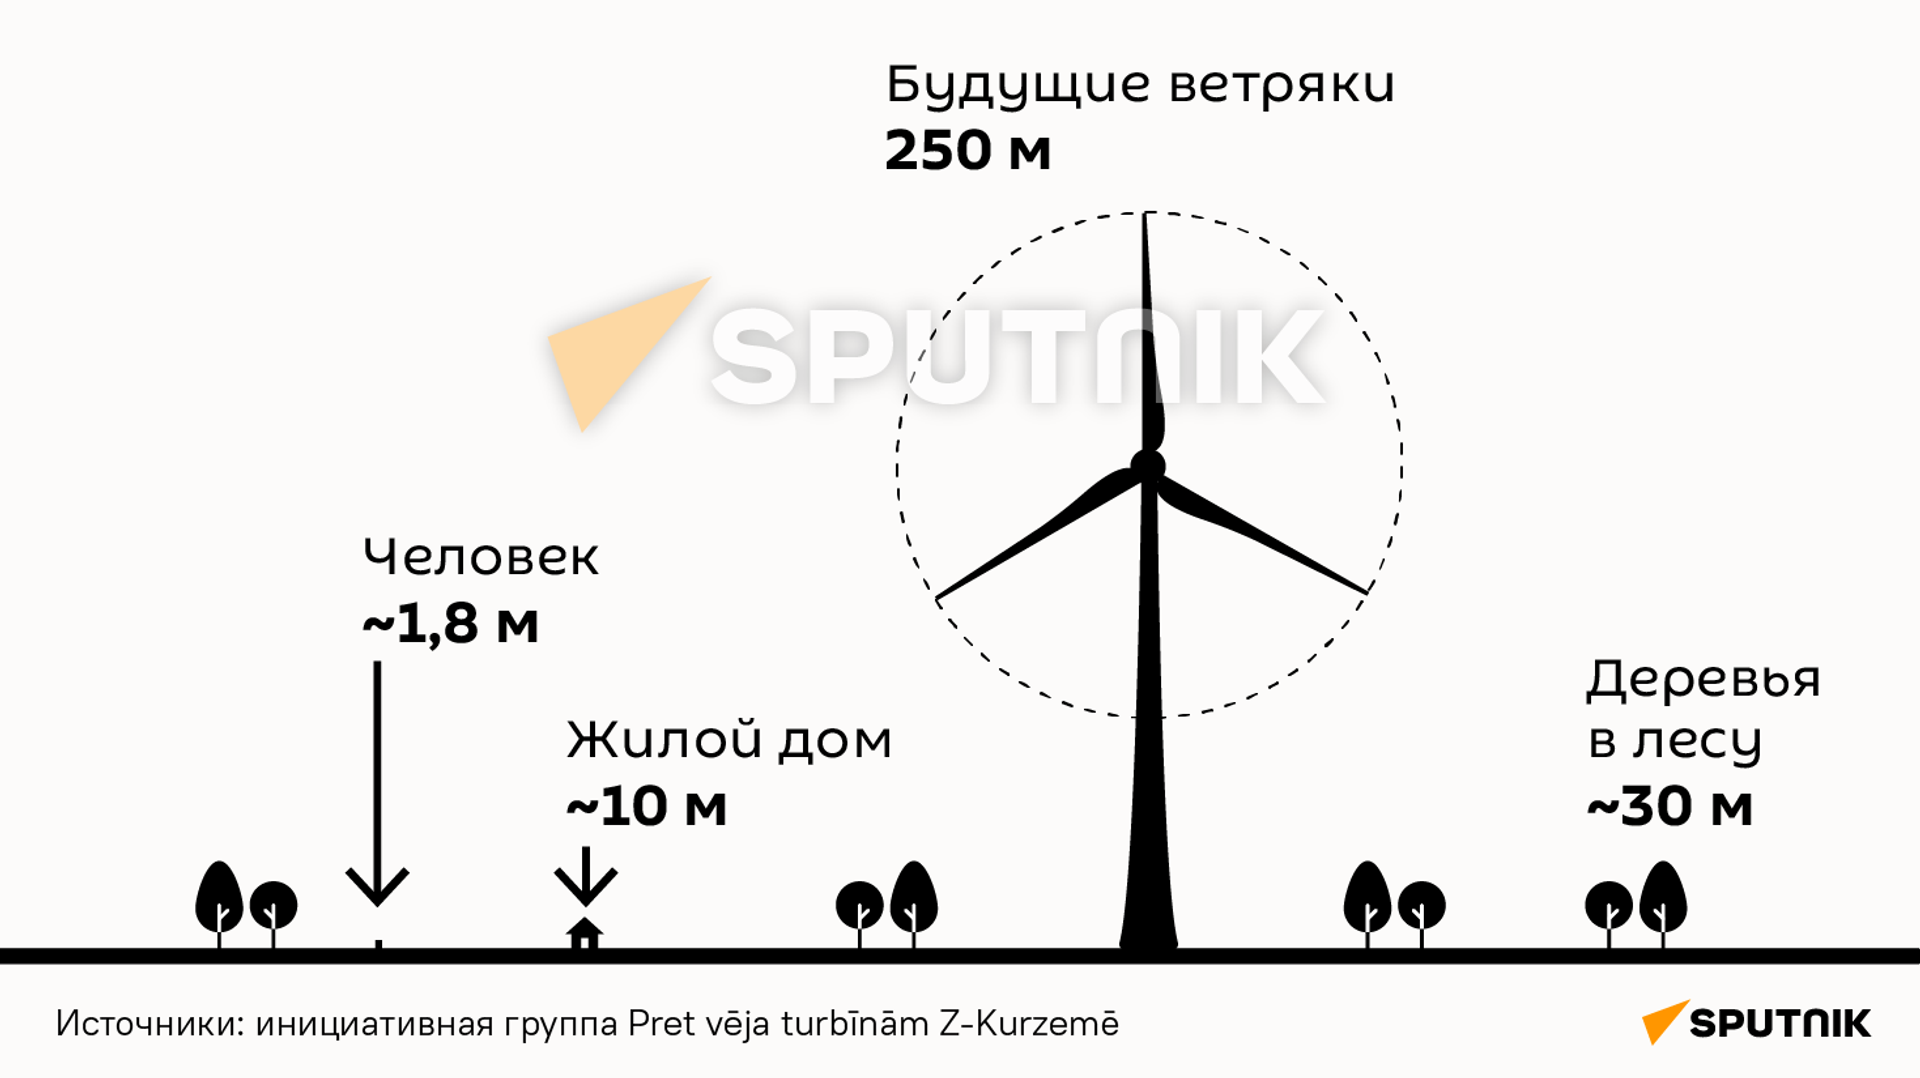 Высота будущих ветряков в Курземе в сравнении - Sputnik Латвия, 1920, 01.07.2021